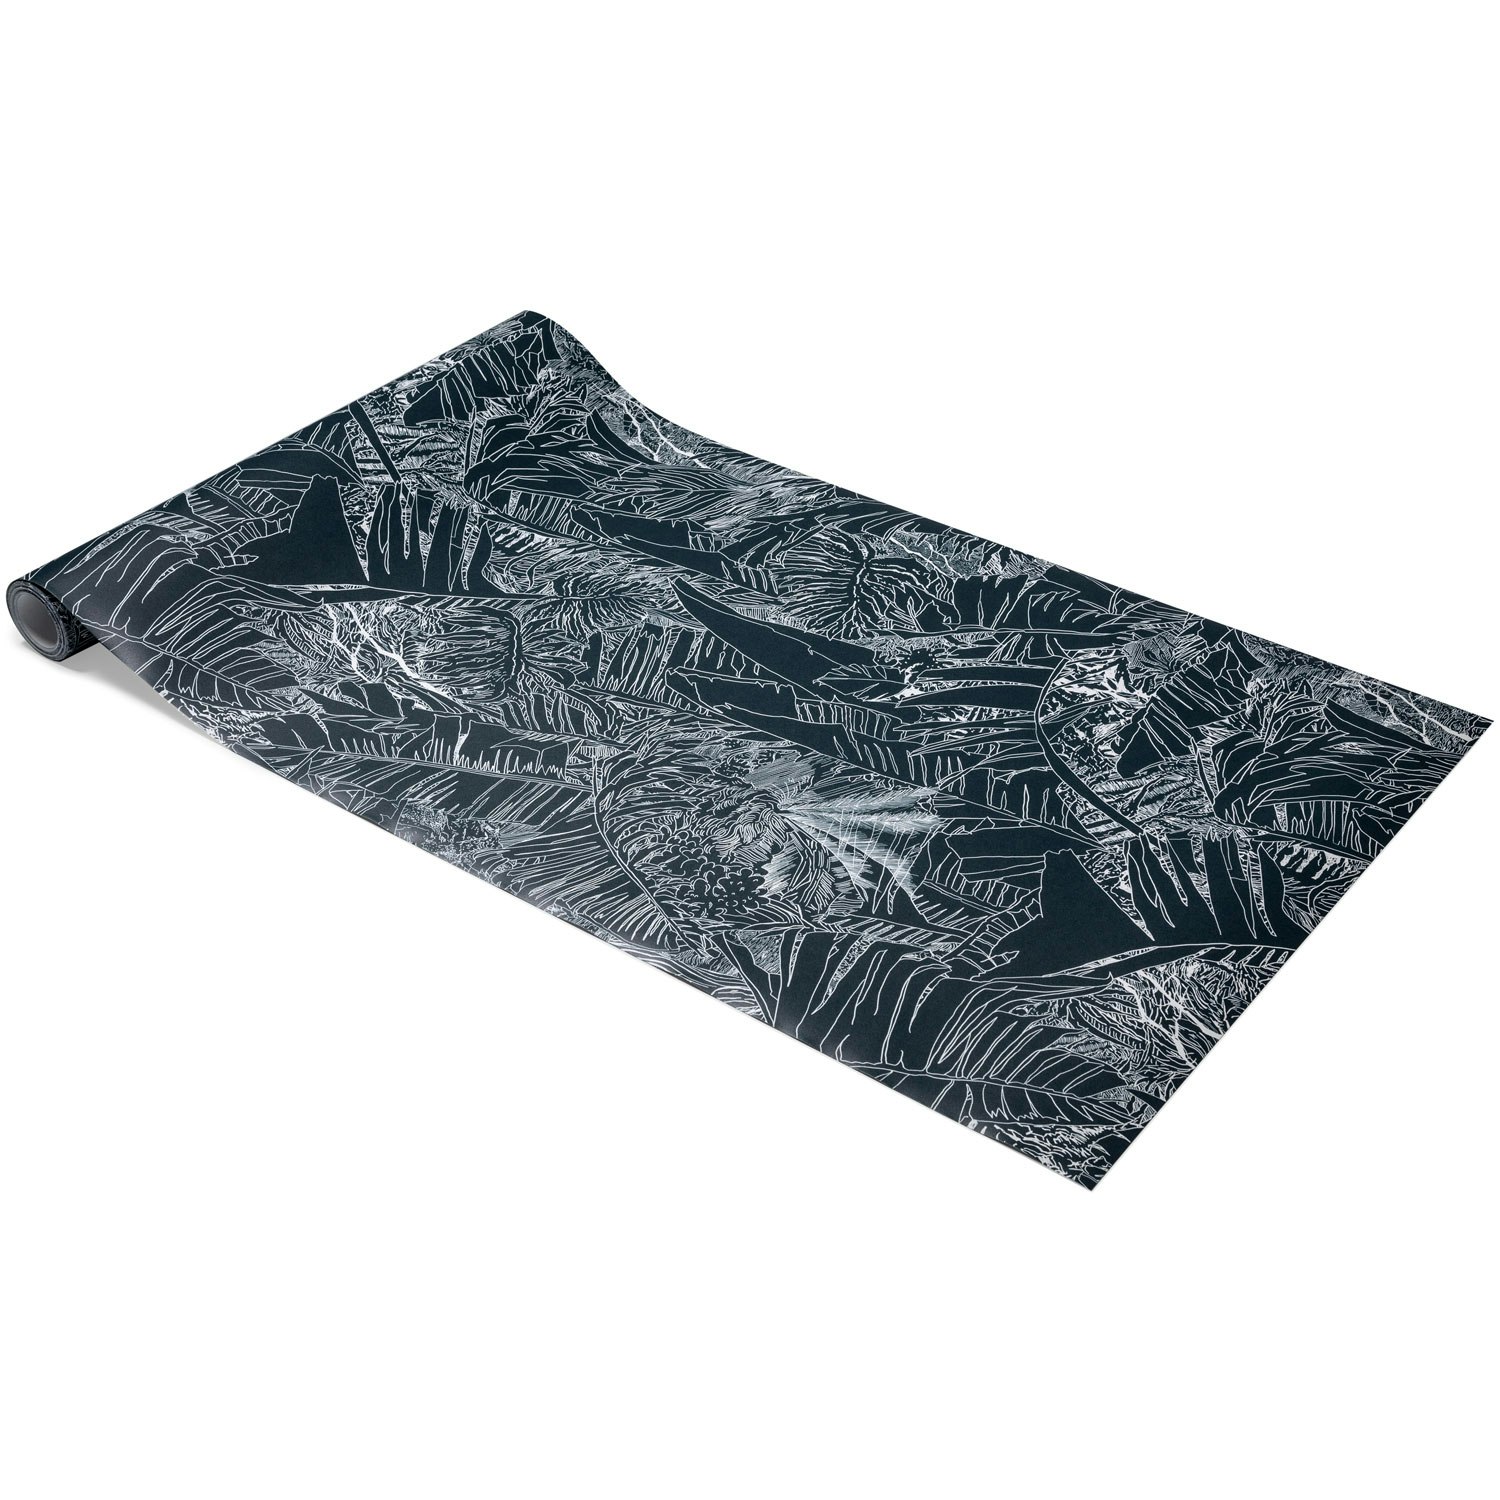 Petite Friture Jungle Tapet 70 cm, Svart / Hvit Sort Papir